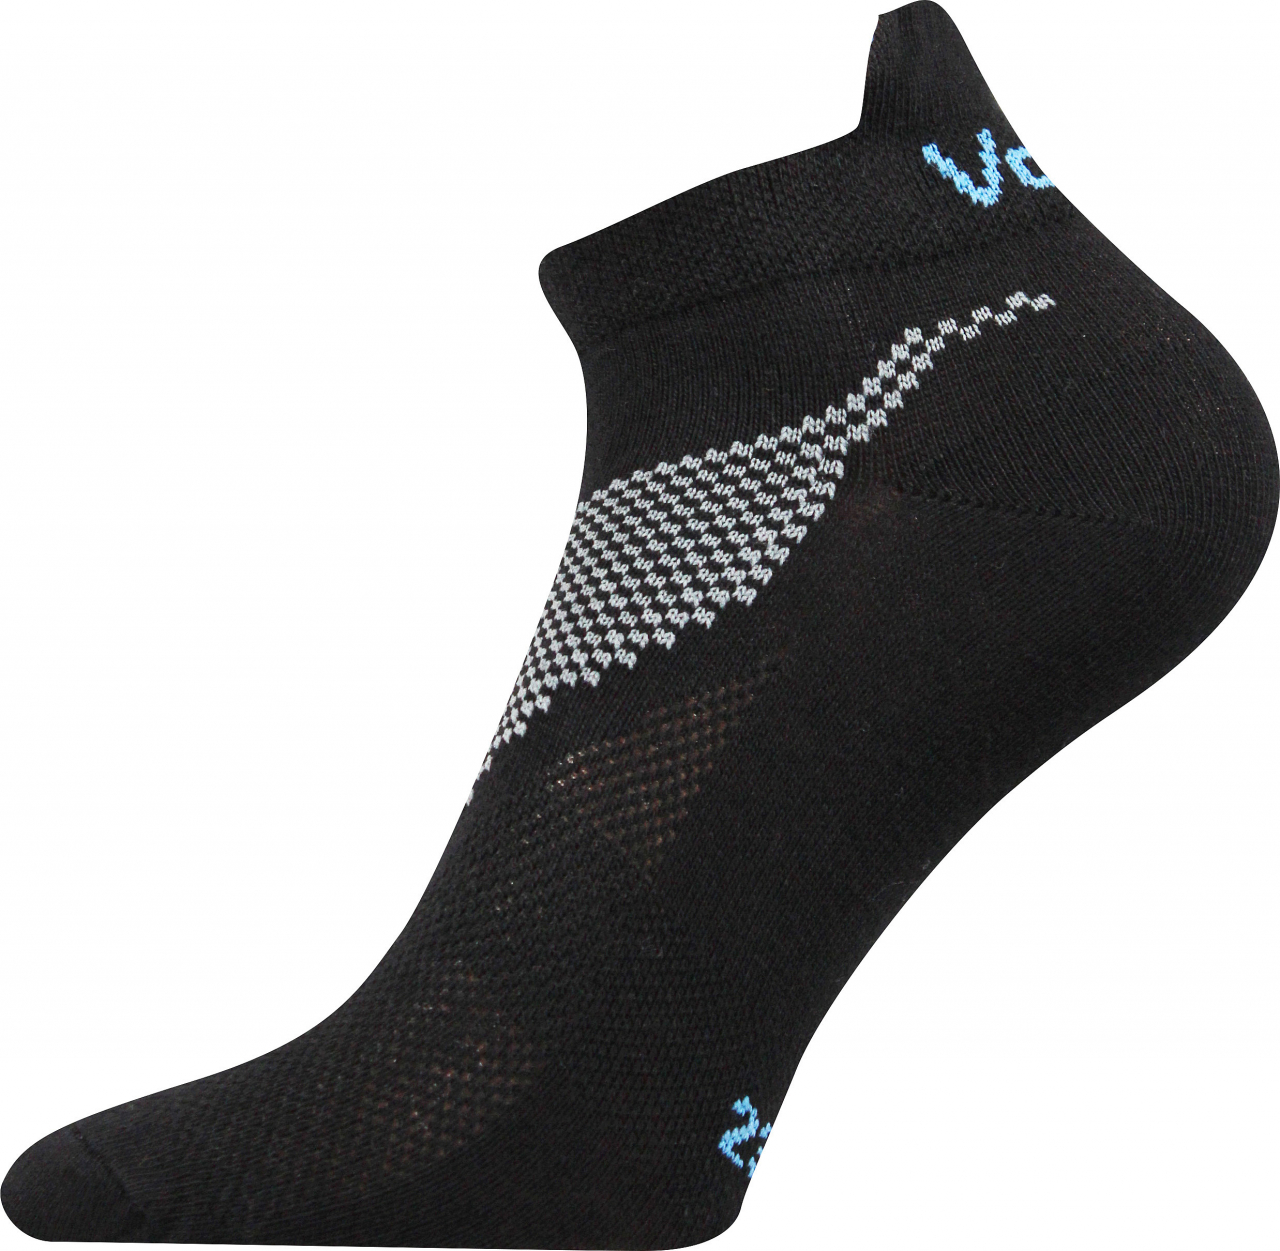 Ponožky sportovní nízké Voxx Iris - černé, 47-50